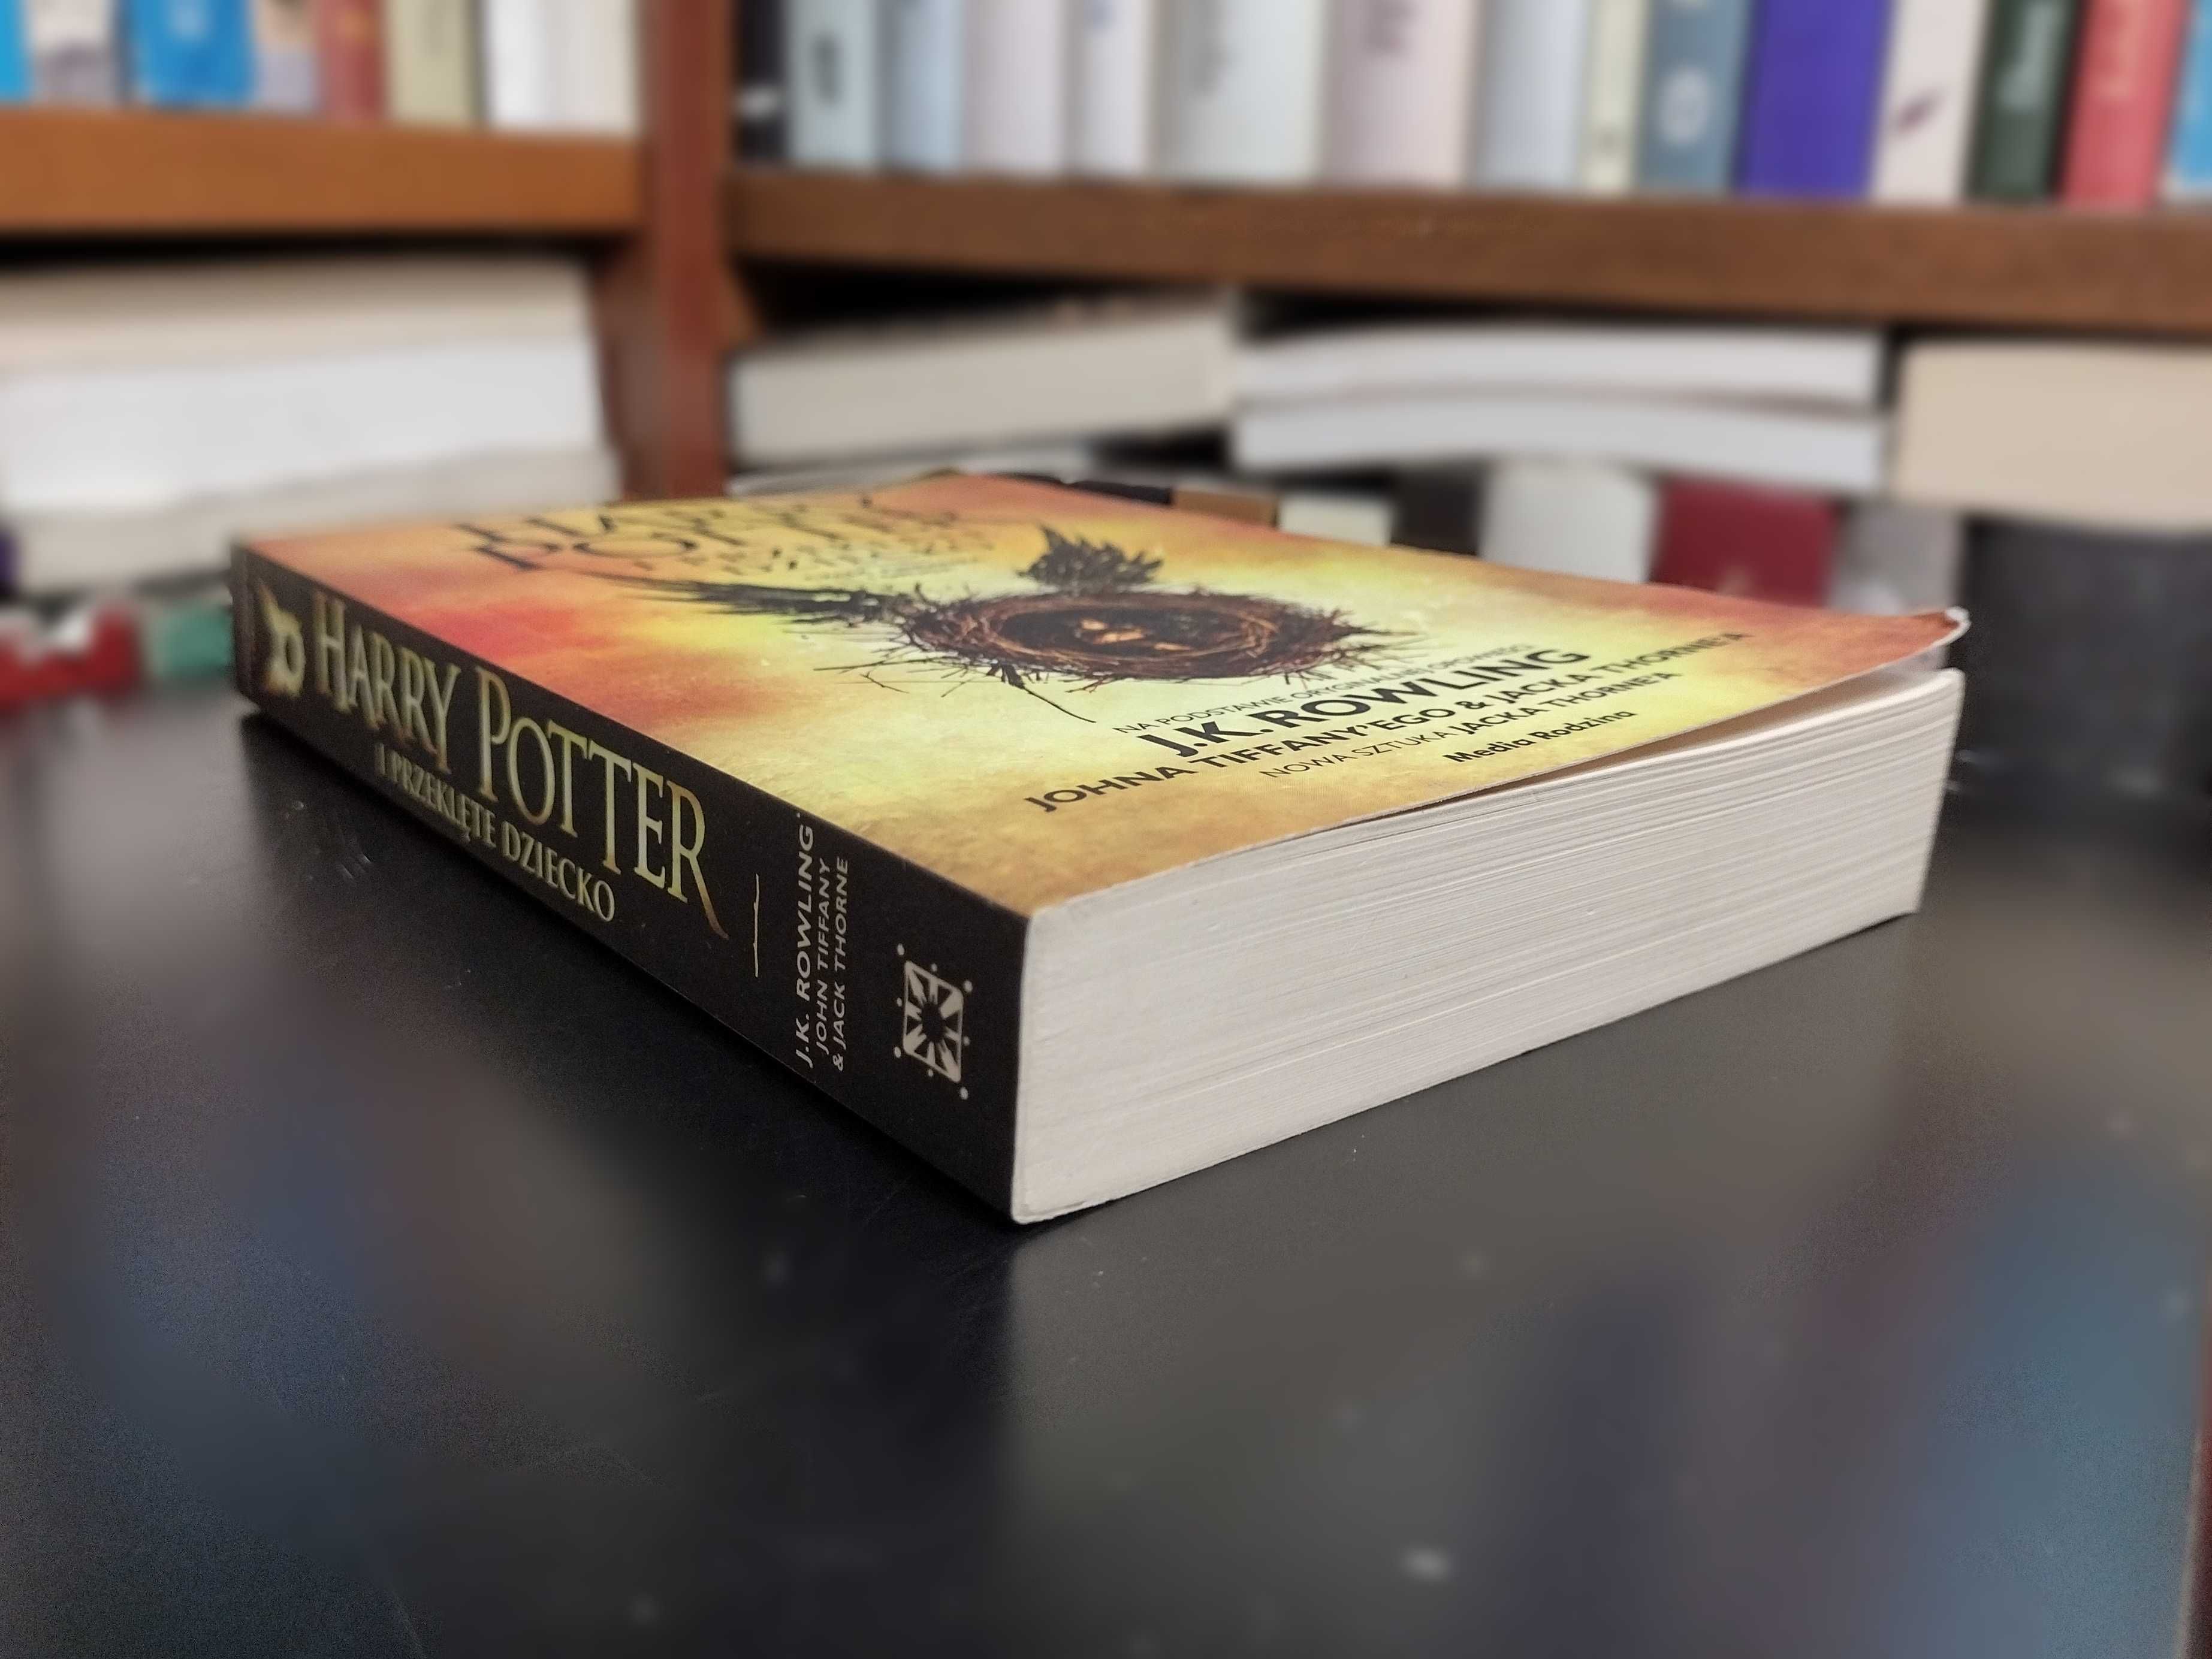 Harry Potter i Przeklęte dziecko (Część 1 i 2) J.K. Rowling